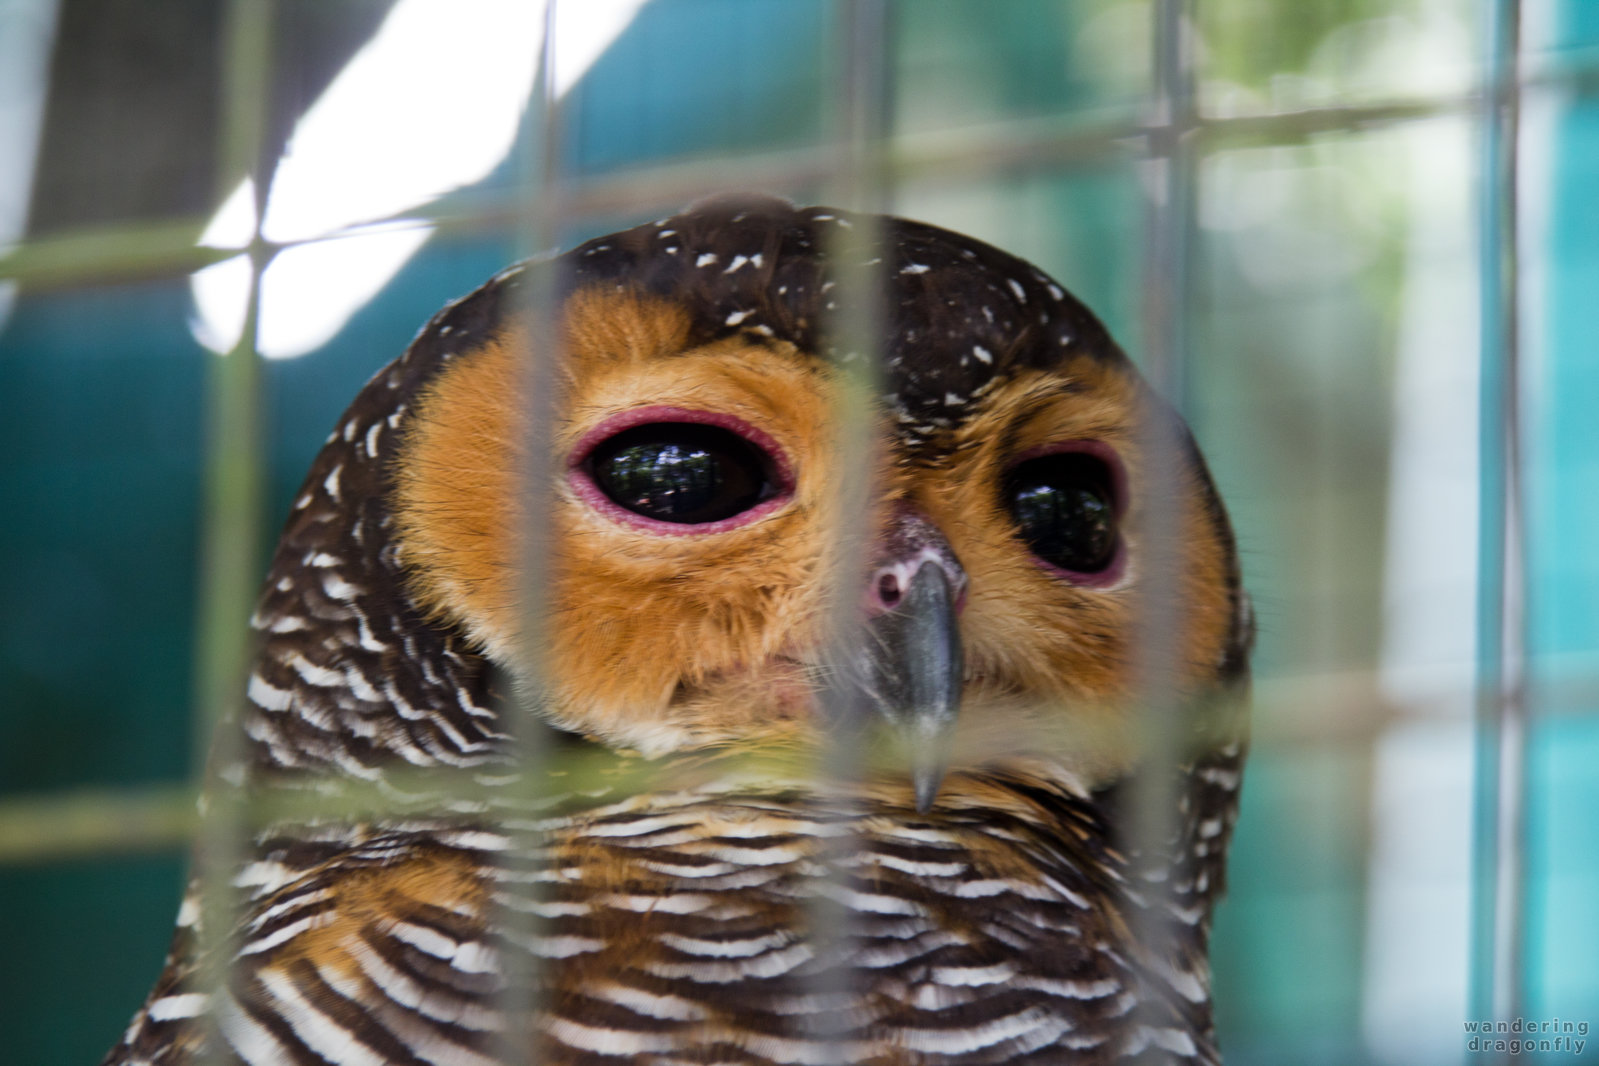 Owl in prison -- owl